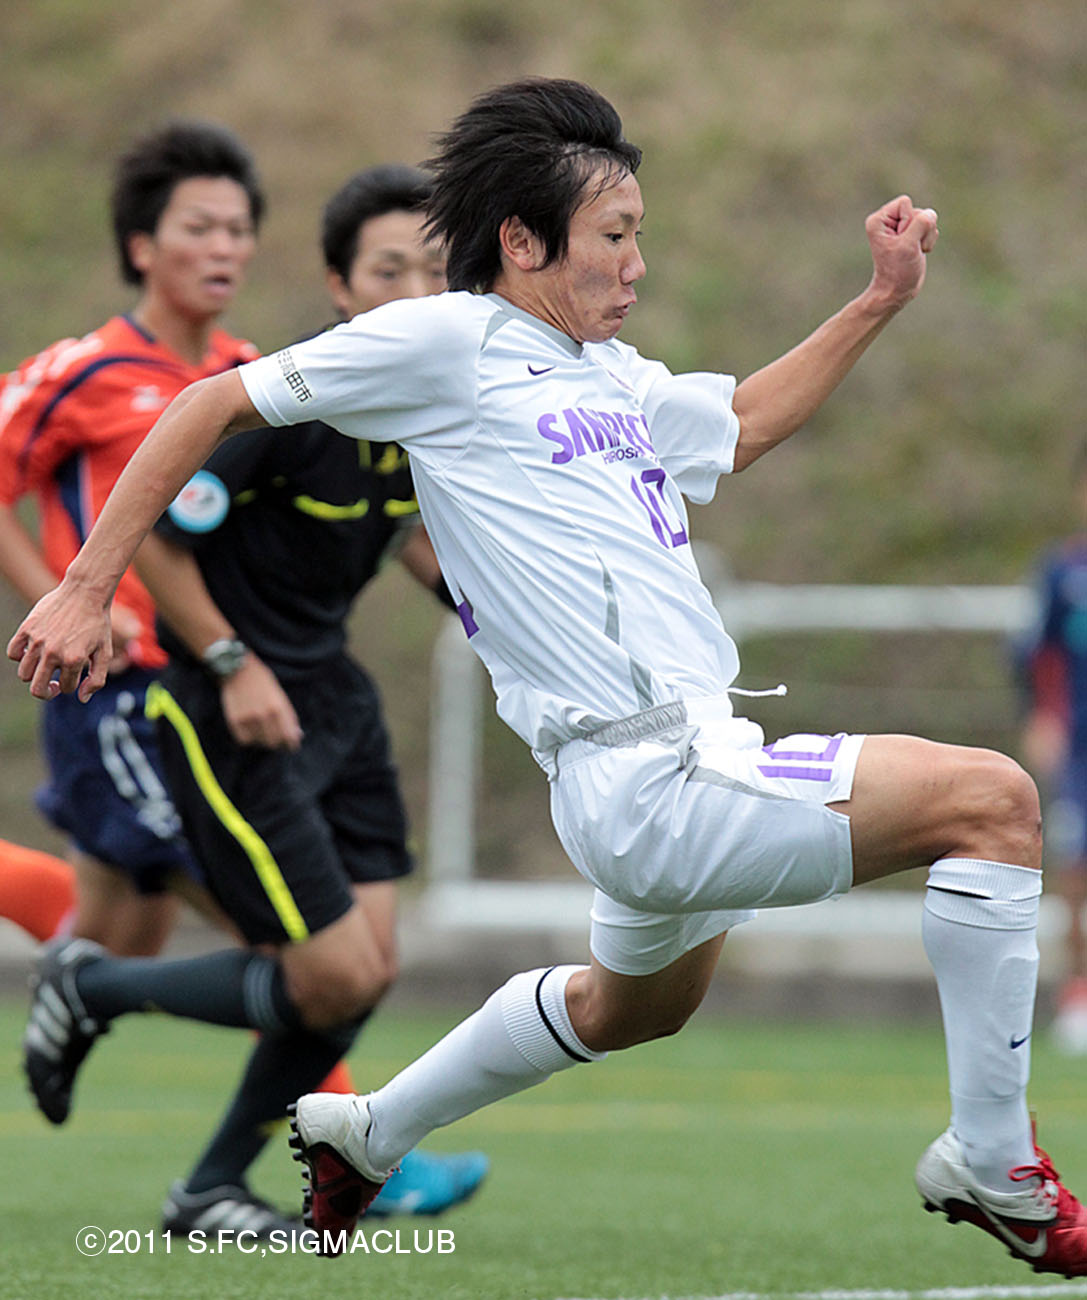 Jユースカップ グループリーグ ユース最後のタイトルへ 初戦で愛媛を1 0で下す Tssサンフレッチェ広島公式モバイルサイト